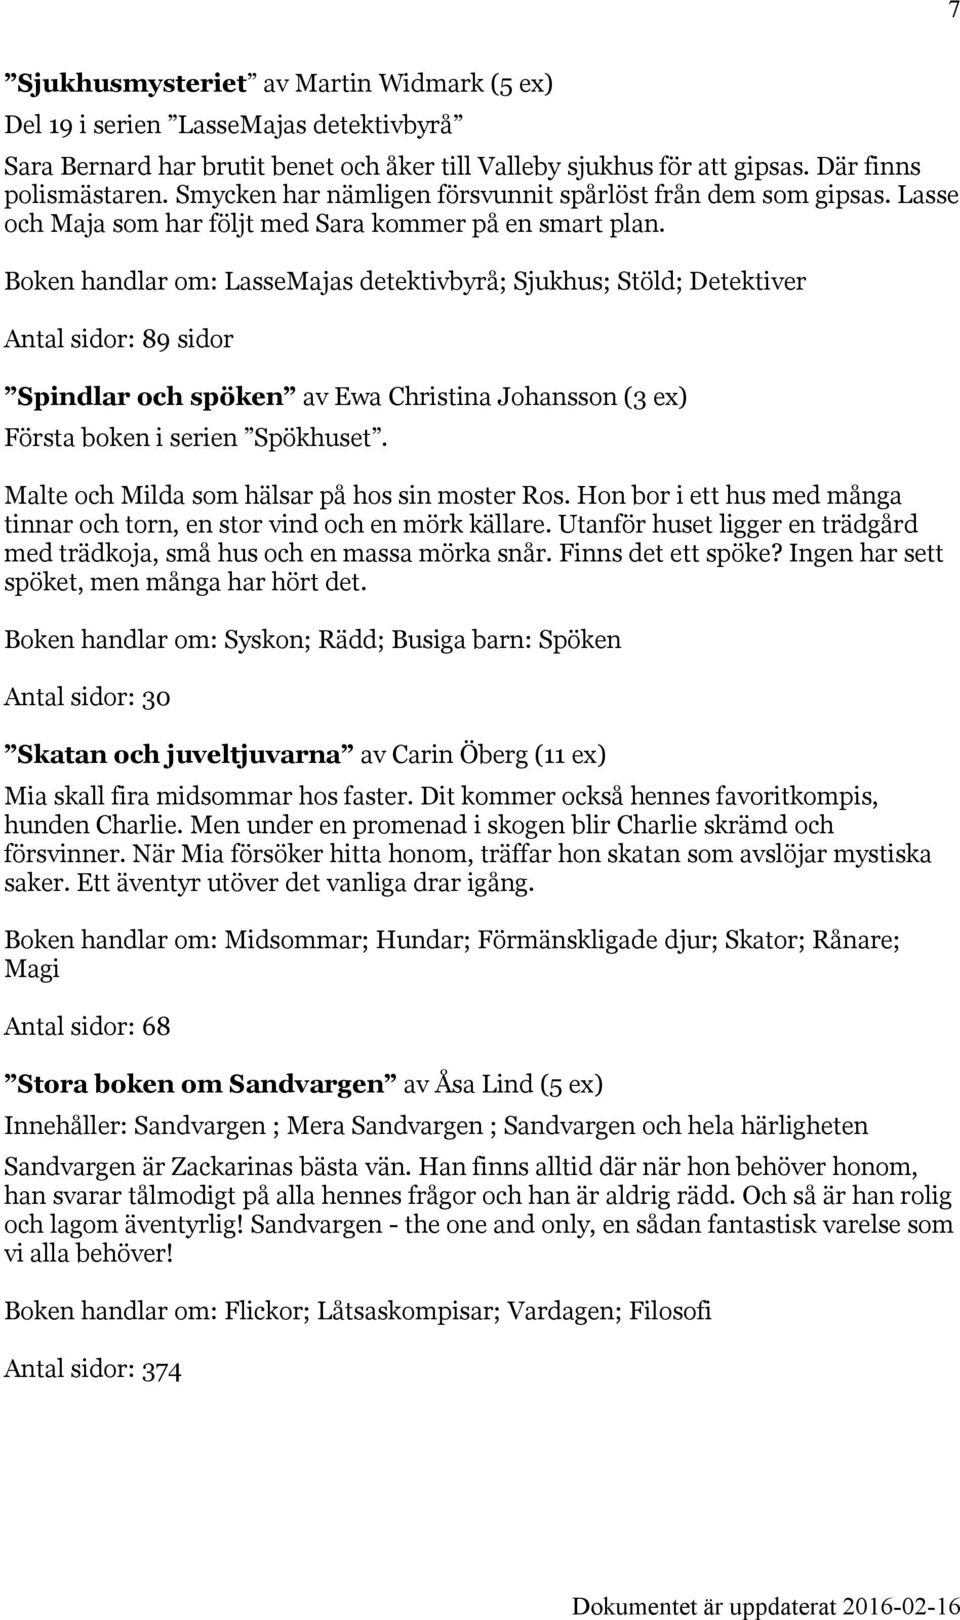 Boken handlar om: LasseMajas detektivbyrå; Sjukhus; Stöld; Detektiver Antal sidor: 89 sidor Spindlar och spöken av Ewa Christina Johansson (3 ex) Första boken i serien Spökhuset.